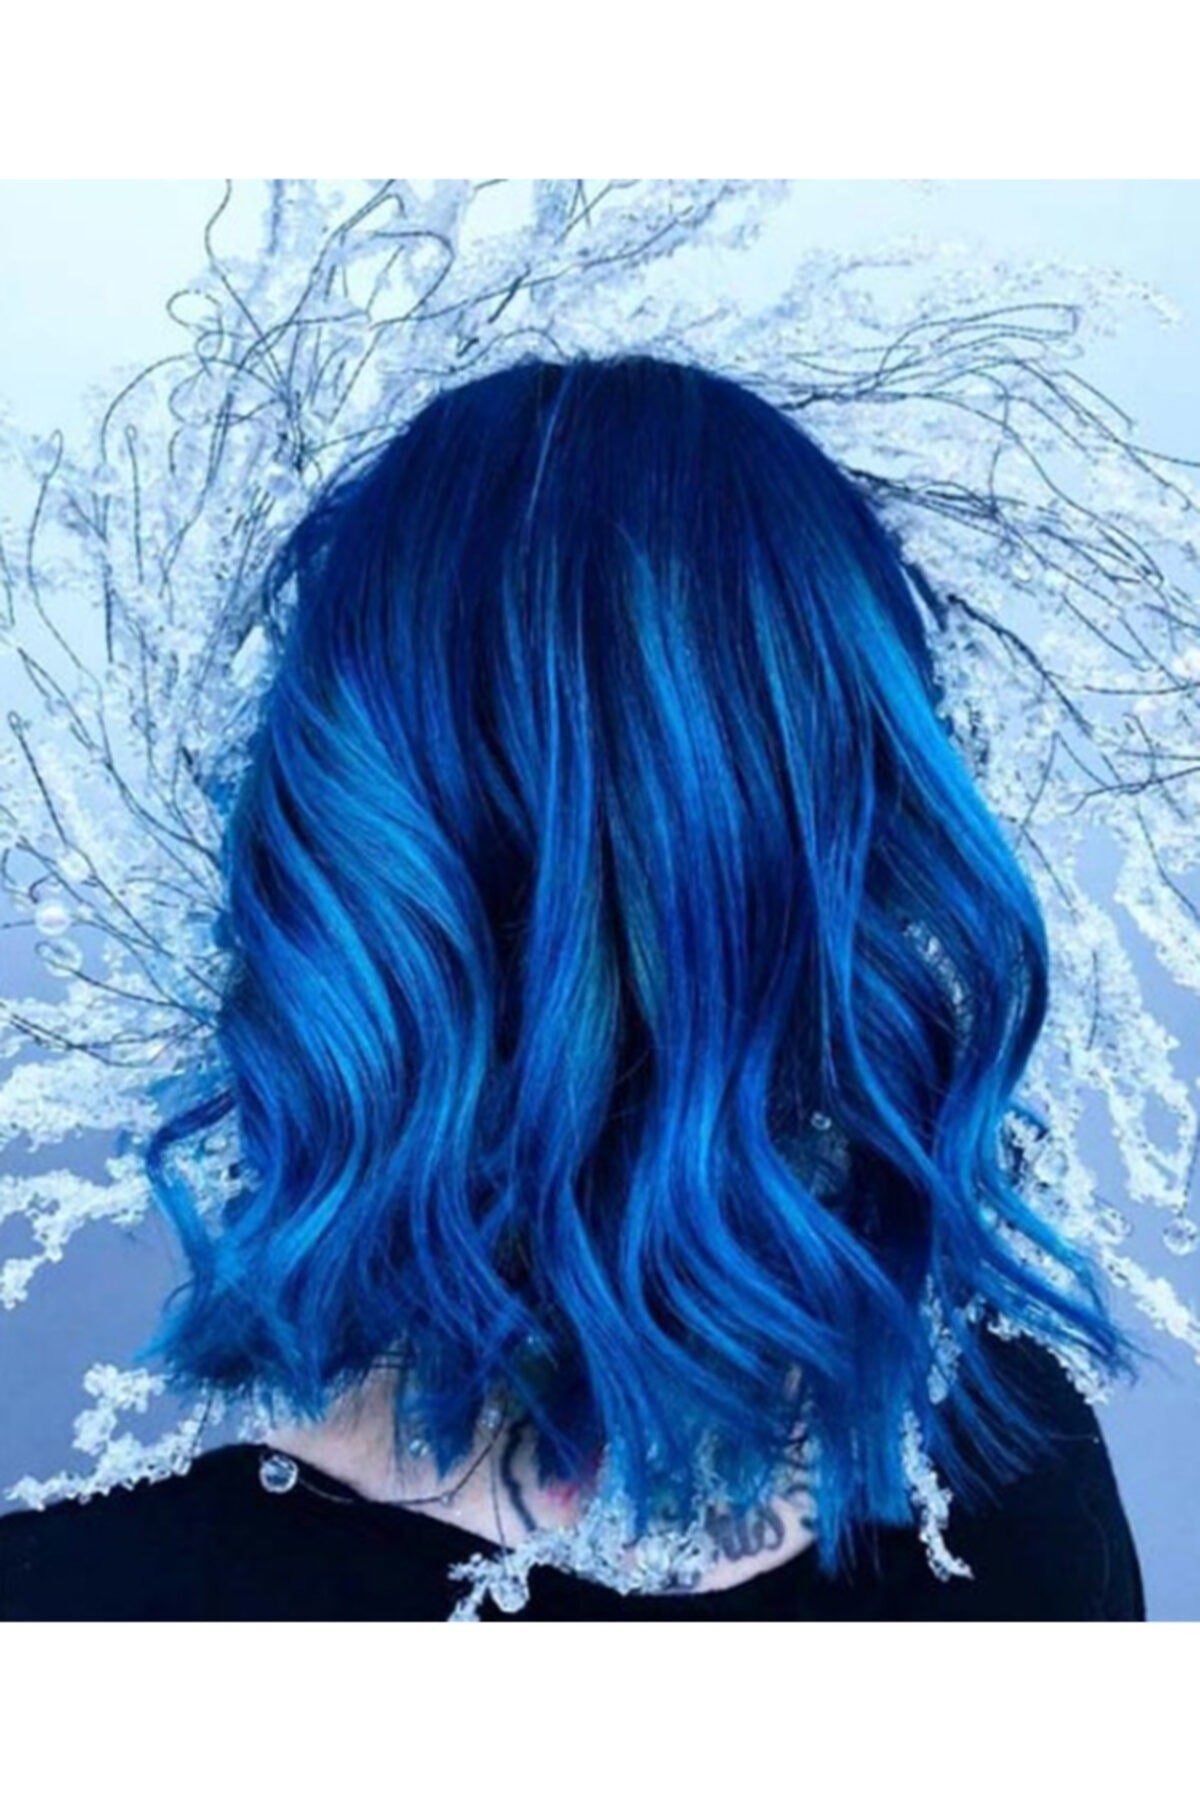 Akos Kadınlar için Mavi Renk 60 Gr Tüp Saç Boyası - Blue | YoncaToptan